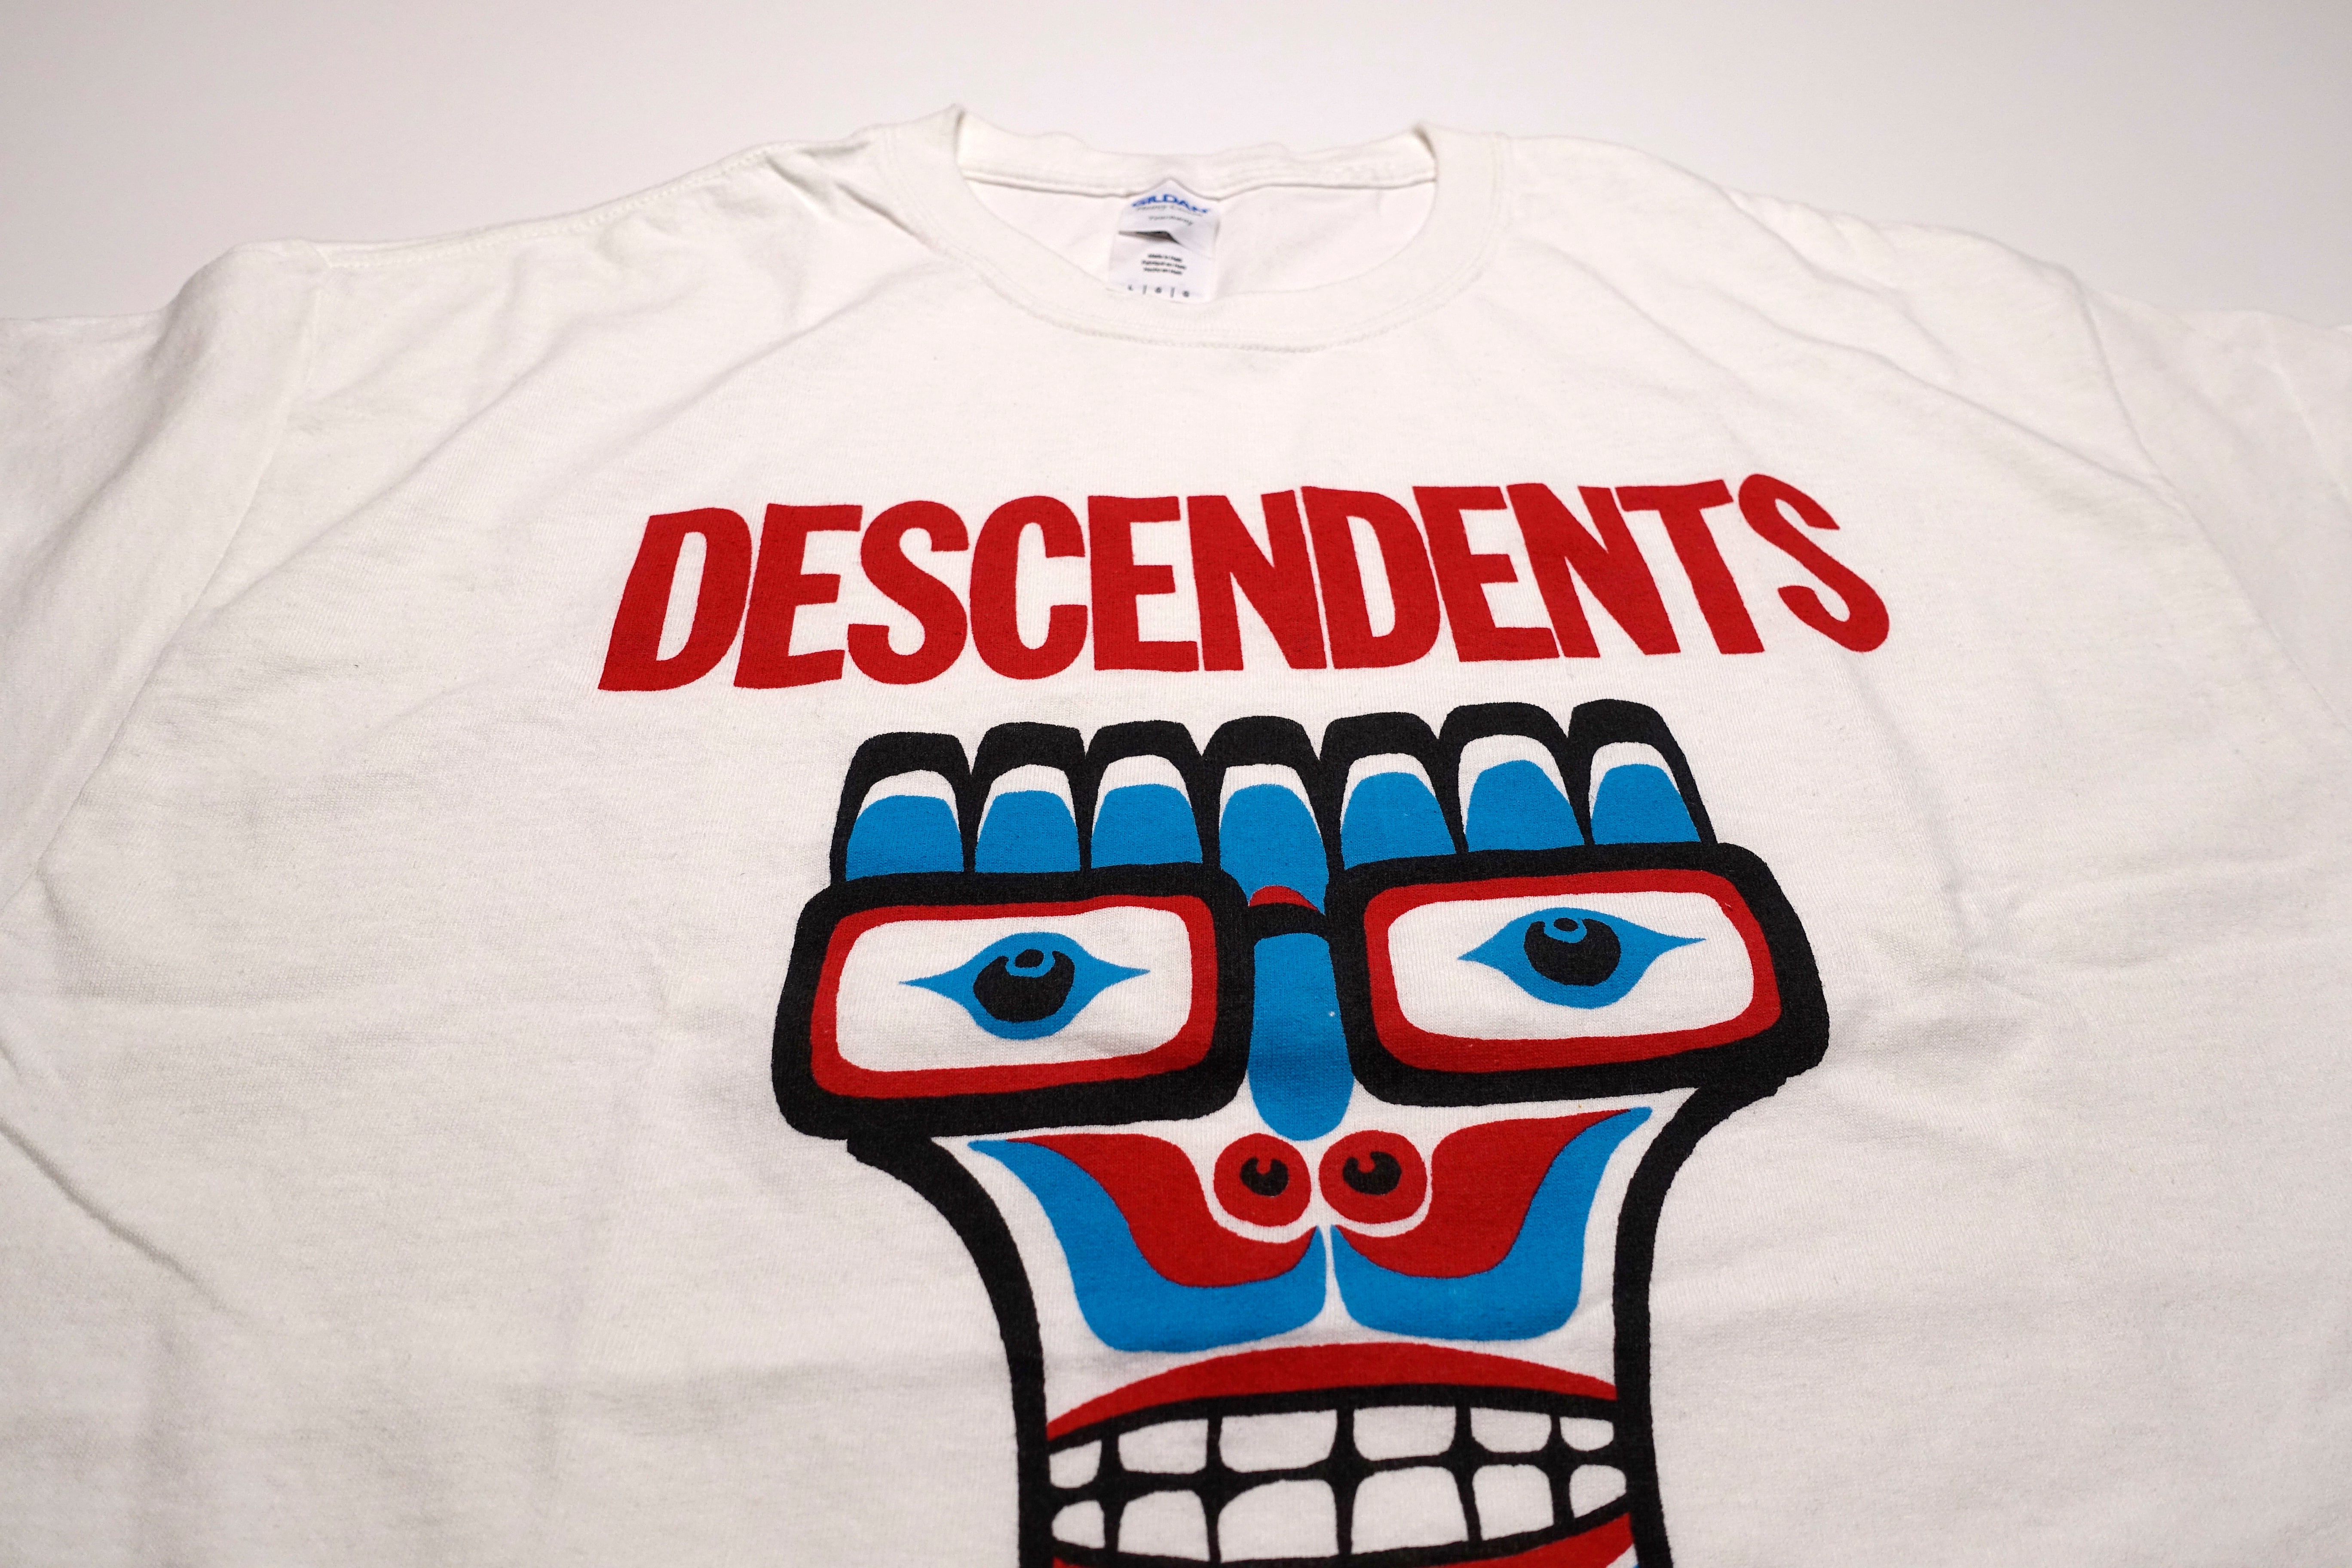 Descendents - Portland, OR 2016 Shirt Size Large